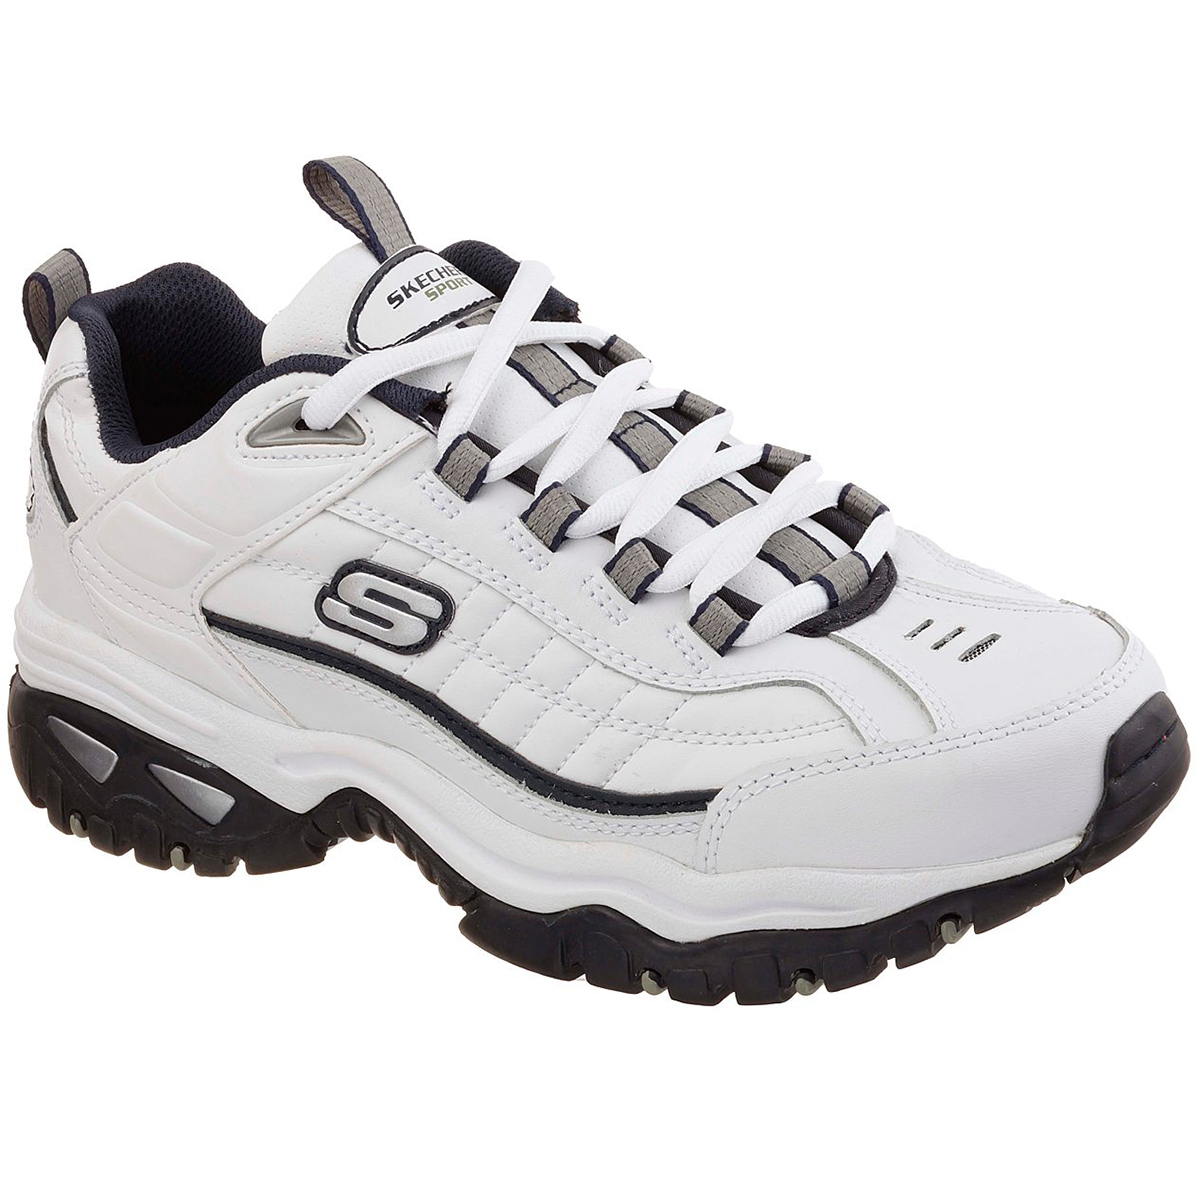 Skechers Men's Energy Afterburn Sneakers - White, 10